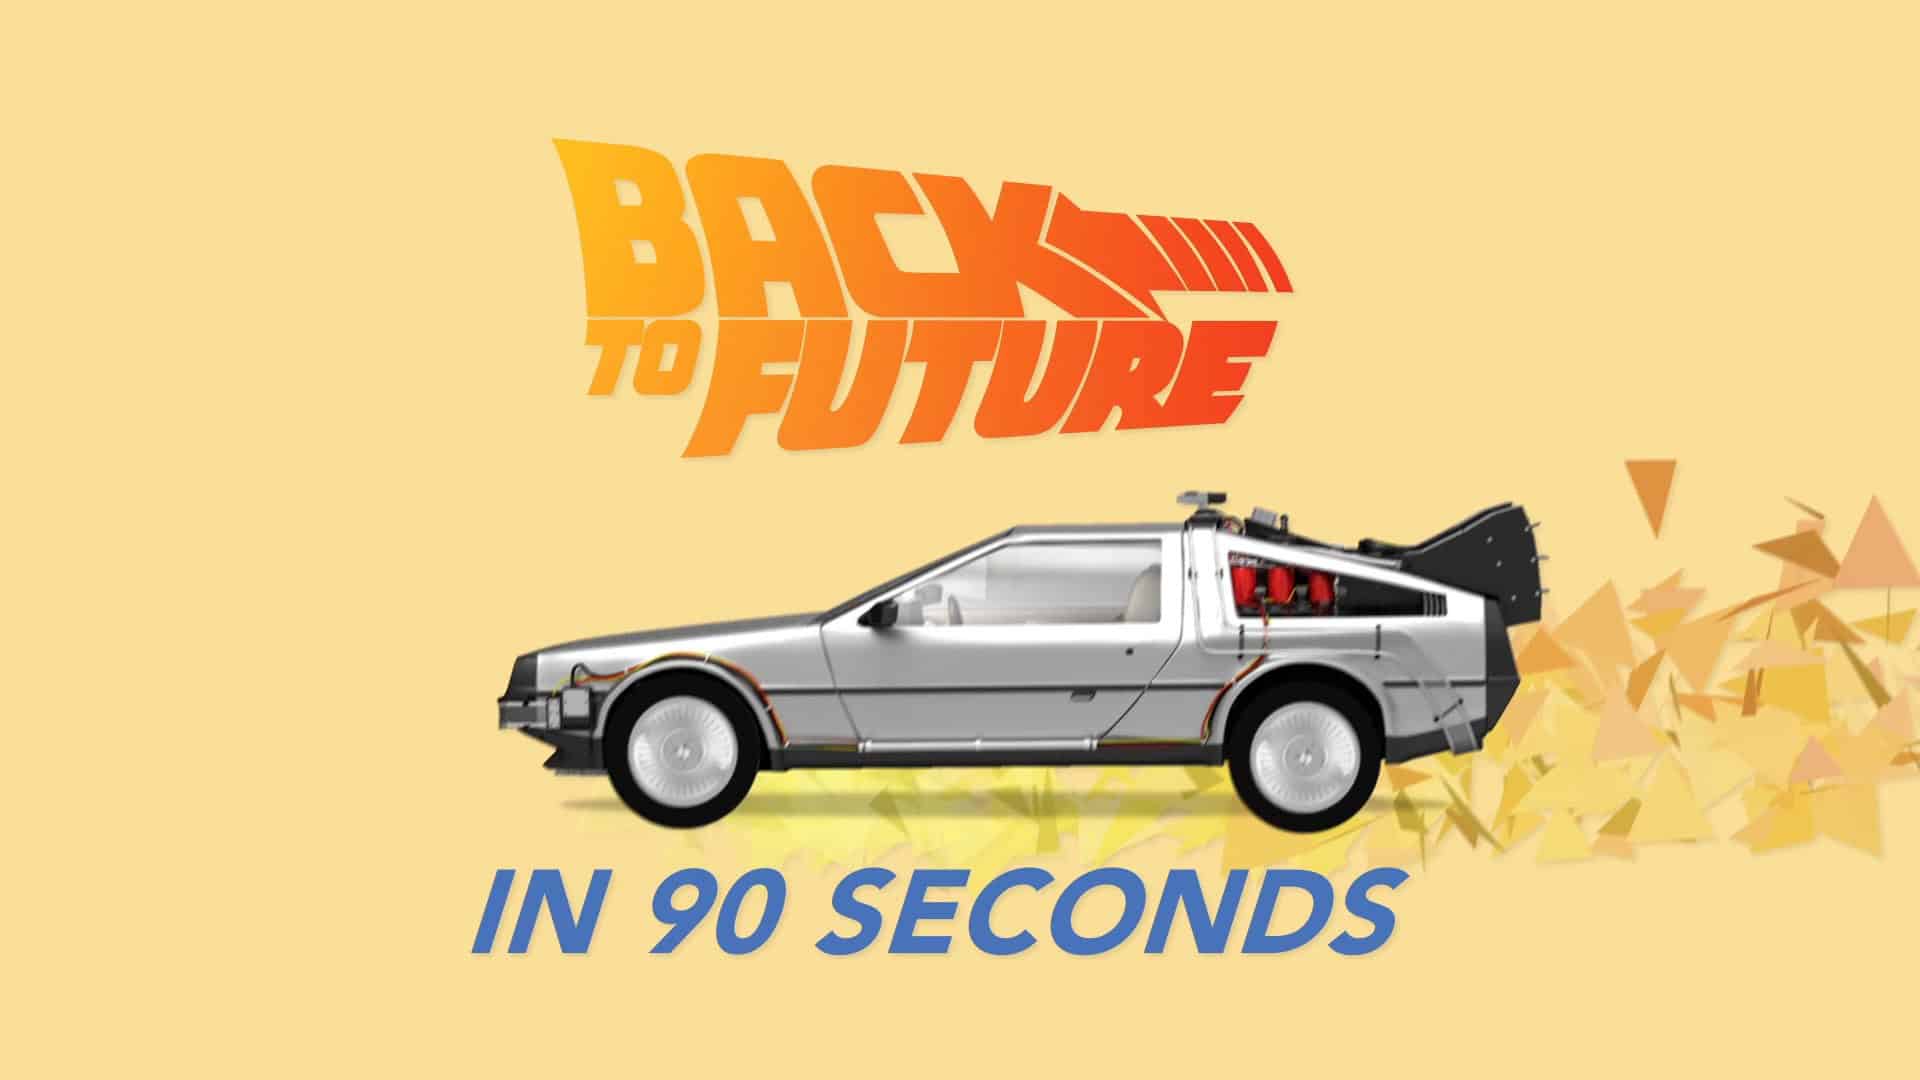 Die "Zurück in die Zukunft"-Trilogie in 90 Sekunden